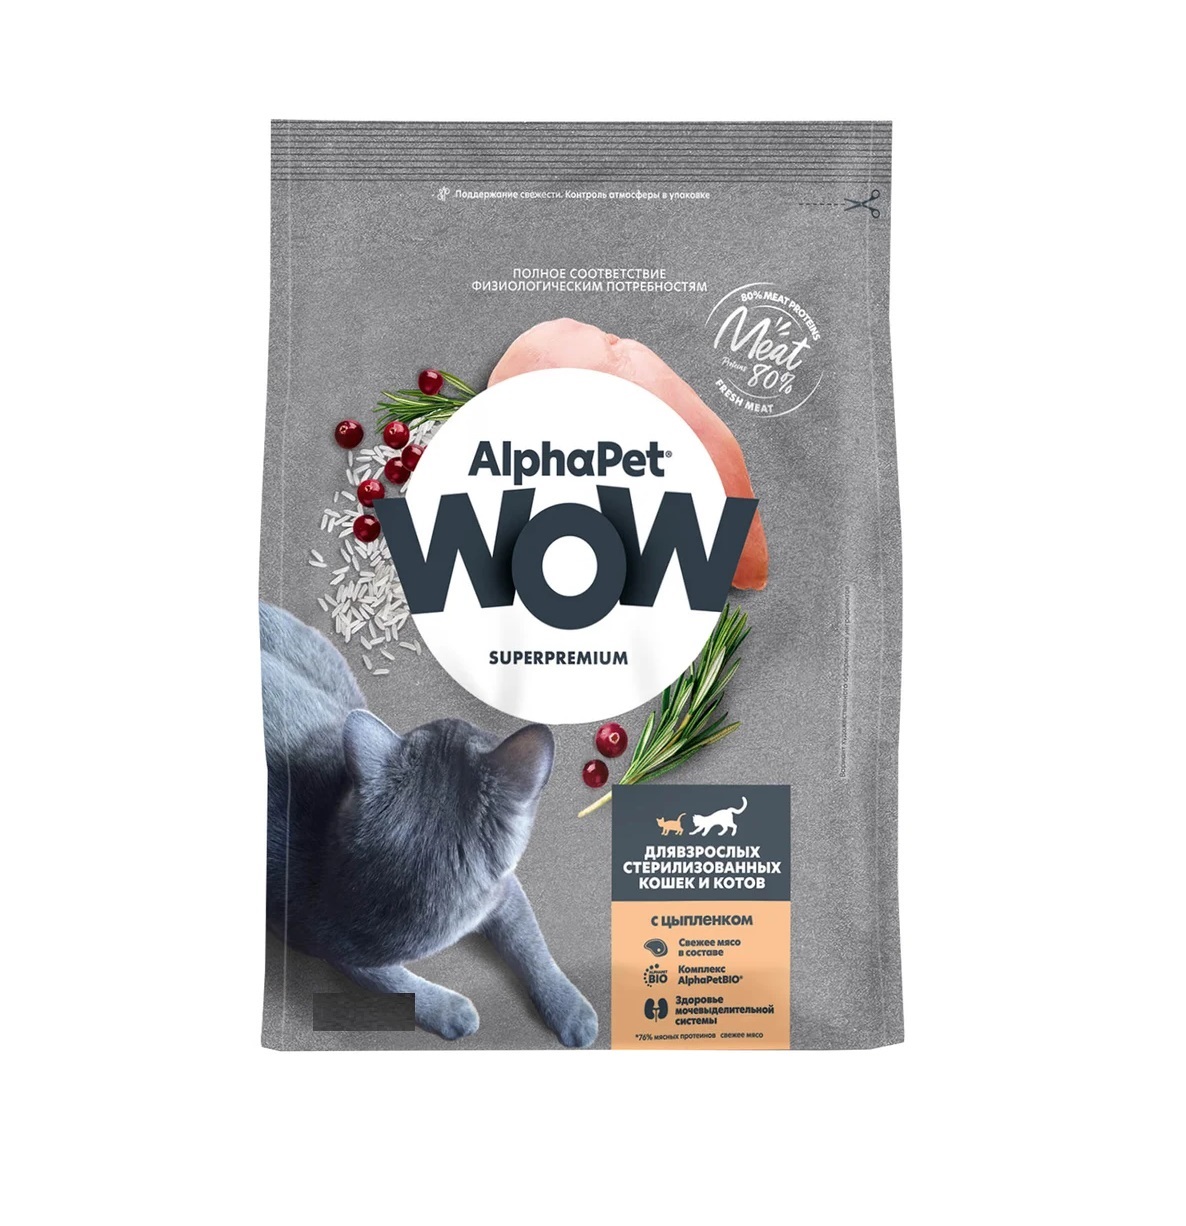 АльфаПет WOW 750гр - для Стерилизованных кошек, Цыпленок (Alpha Pet WOW) + Подарок